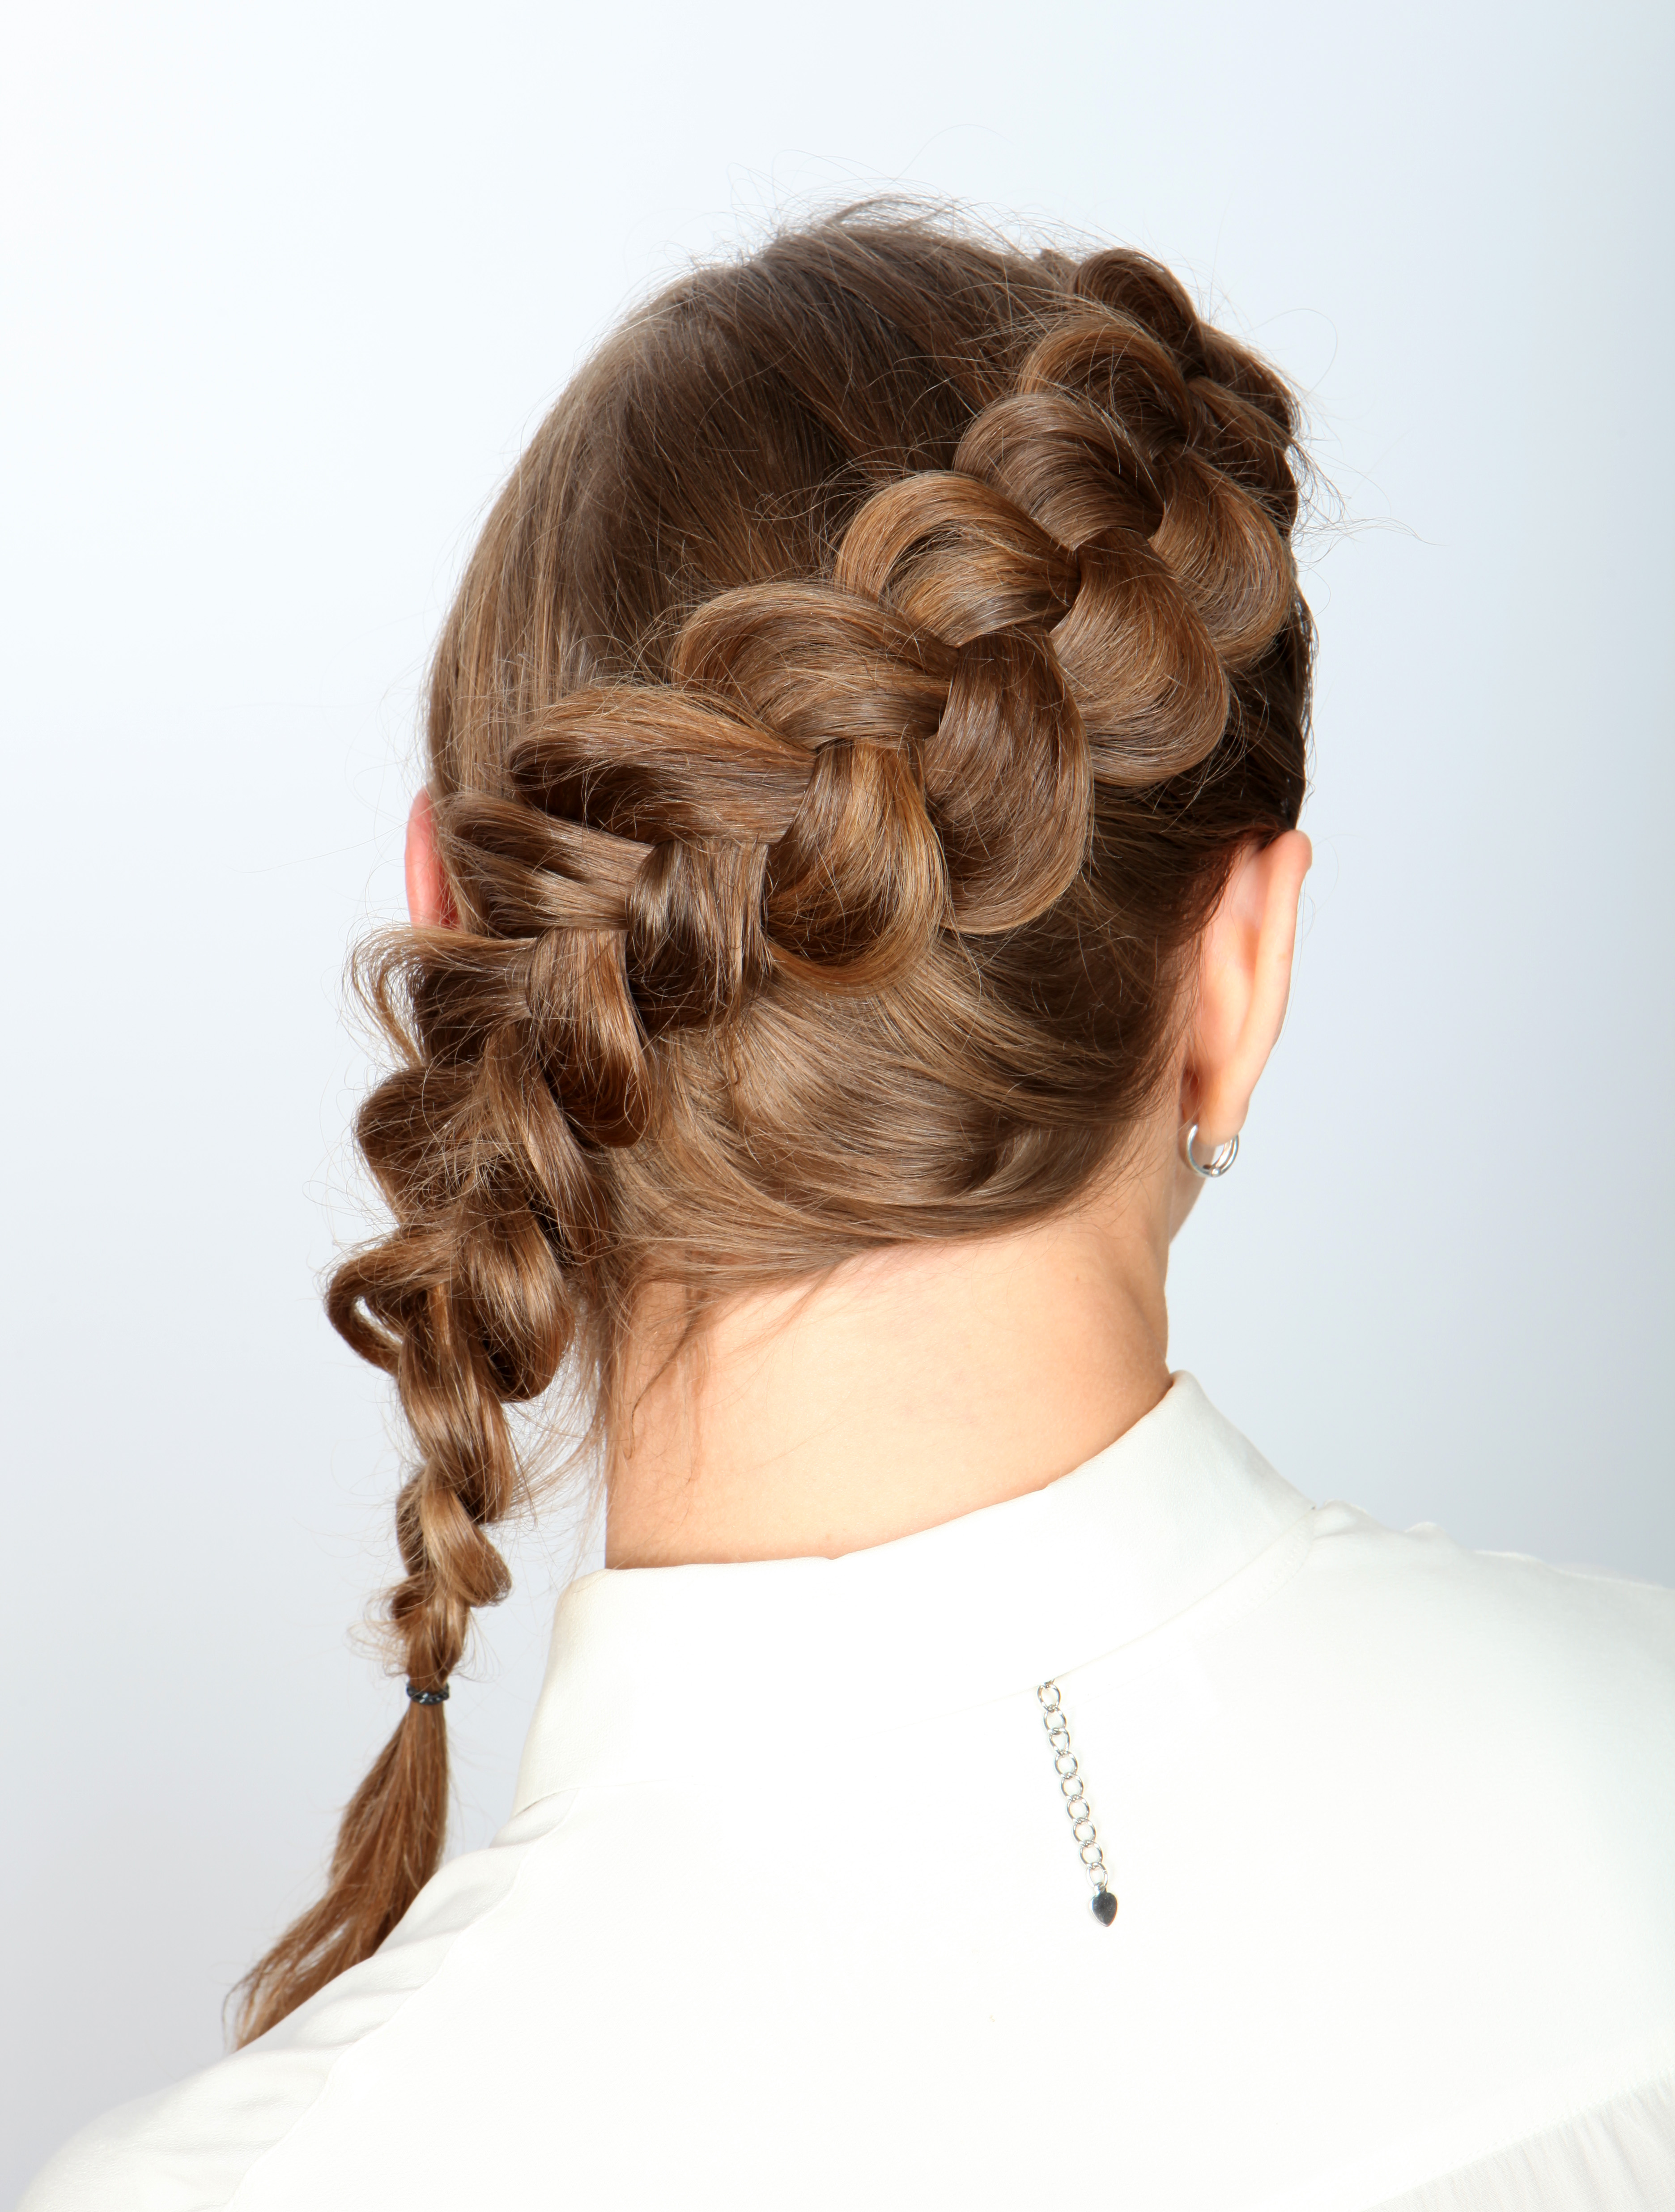 Французская коса на бок – плетение объемной косы пошагово, как плести поэтапно